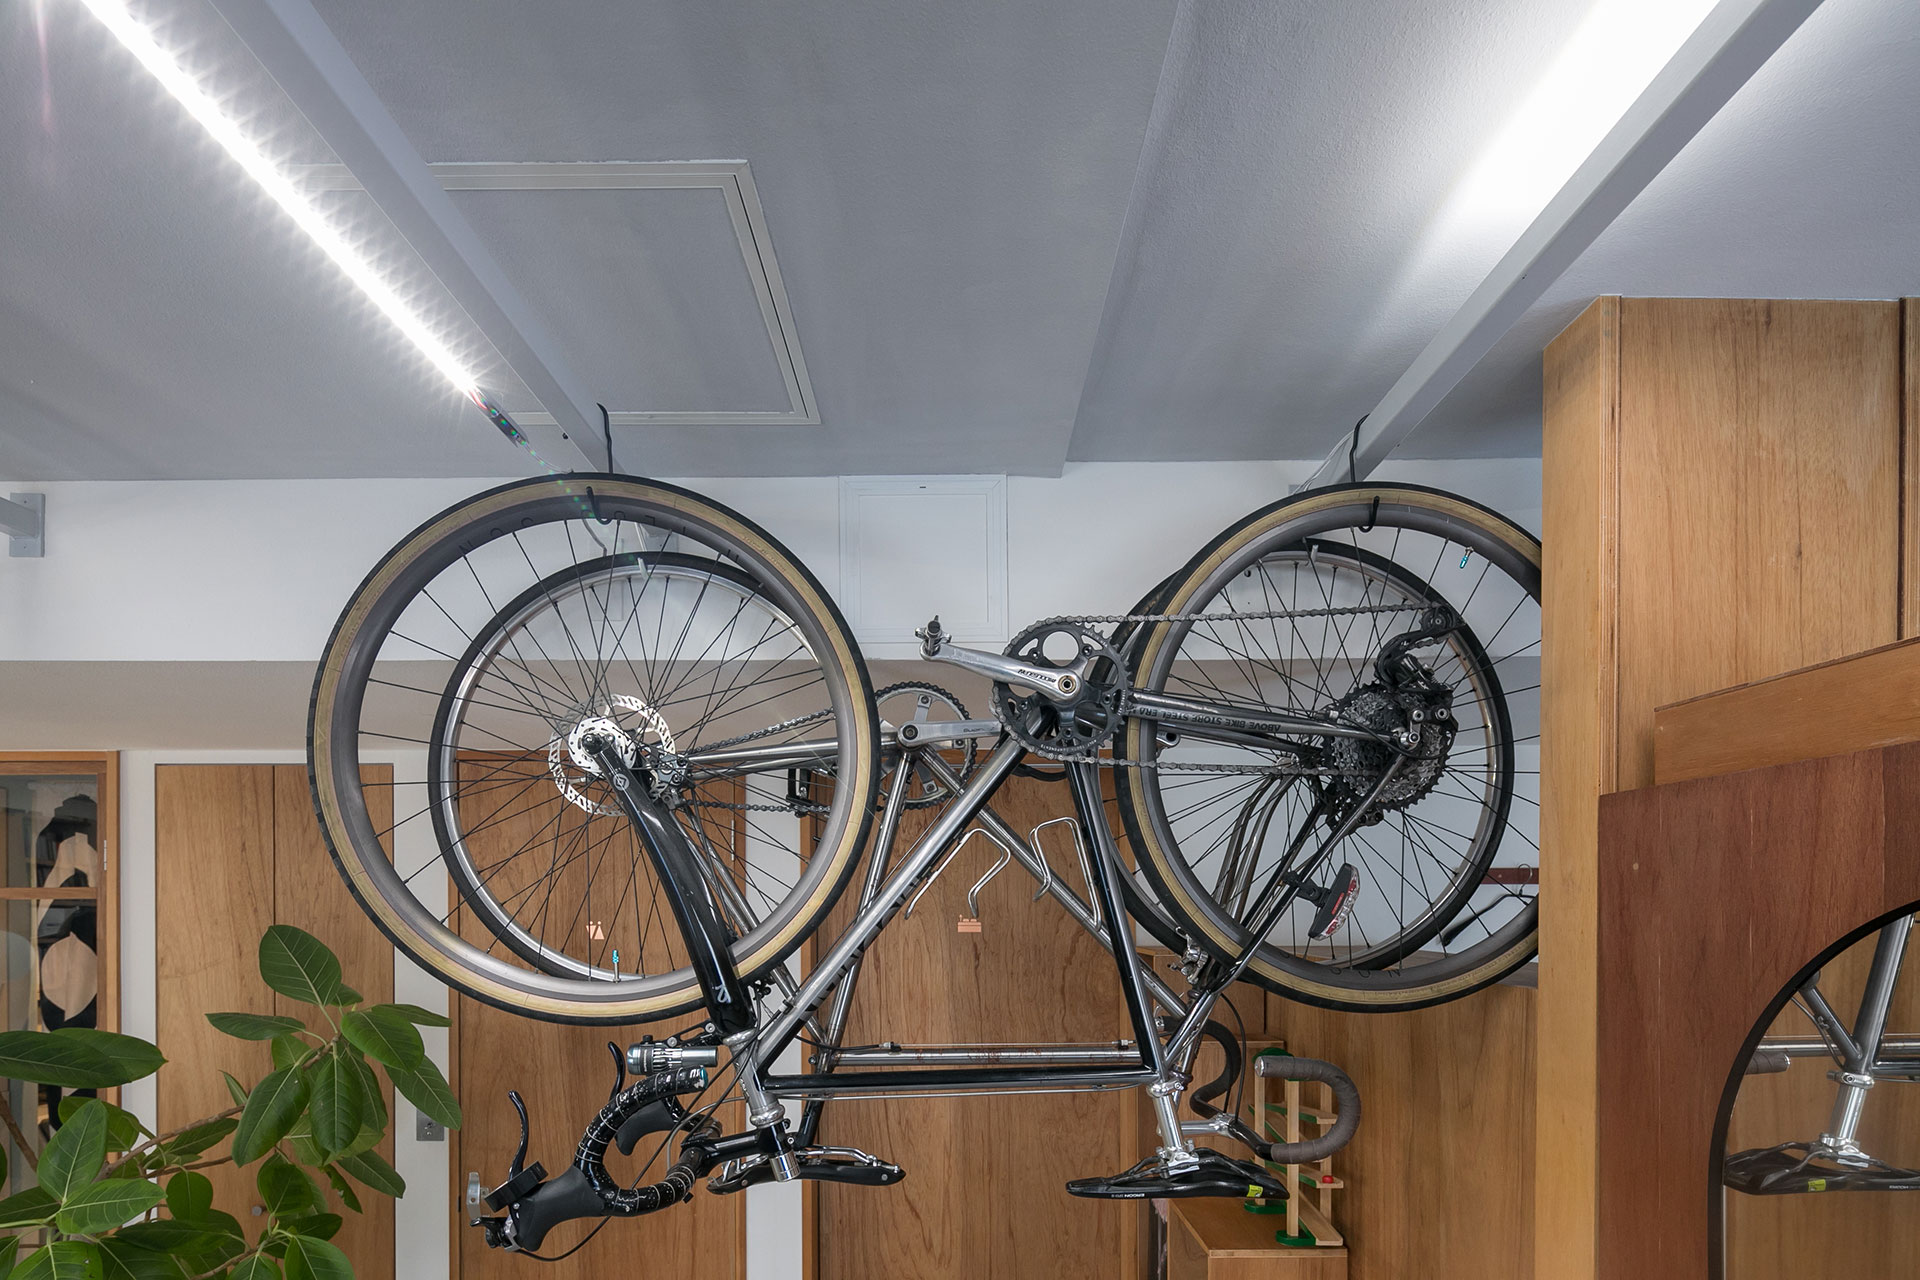 自転車をかけるハンギングバーには、動かせるバーライトをのせている。作業時には左側のようにバーライトを垂らして光量を確保できる。